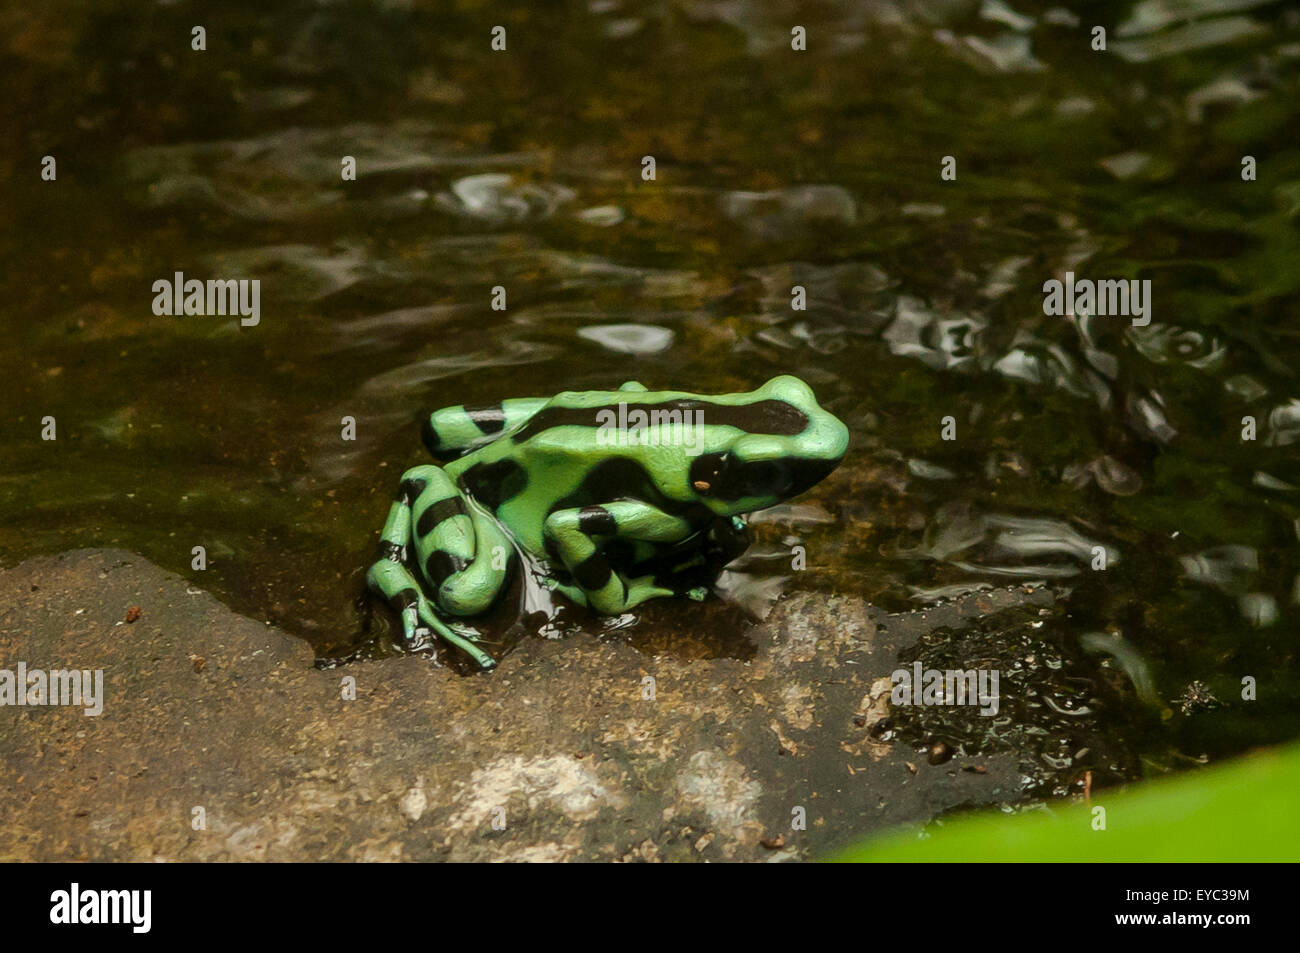 Dendrobates Auratus, grün und schwarz Poison Frog, La Paz Wasserfall Gärten, Costa Rica Stockfoto